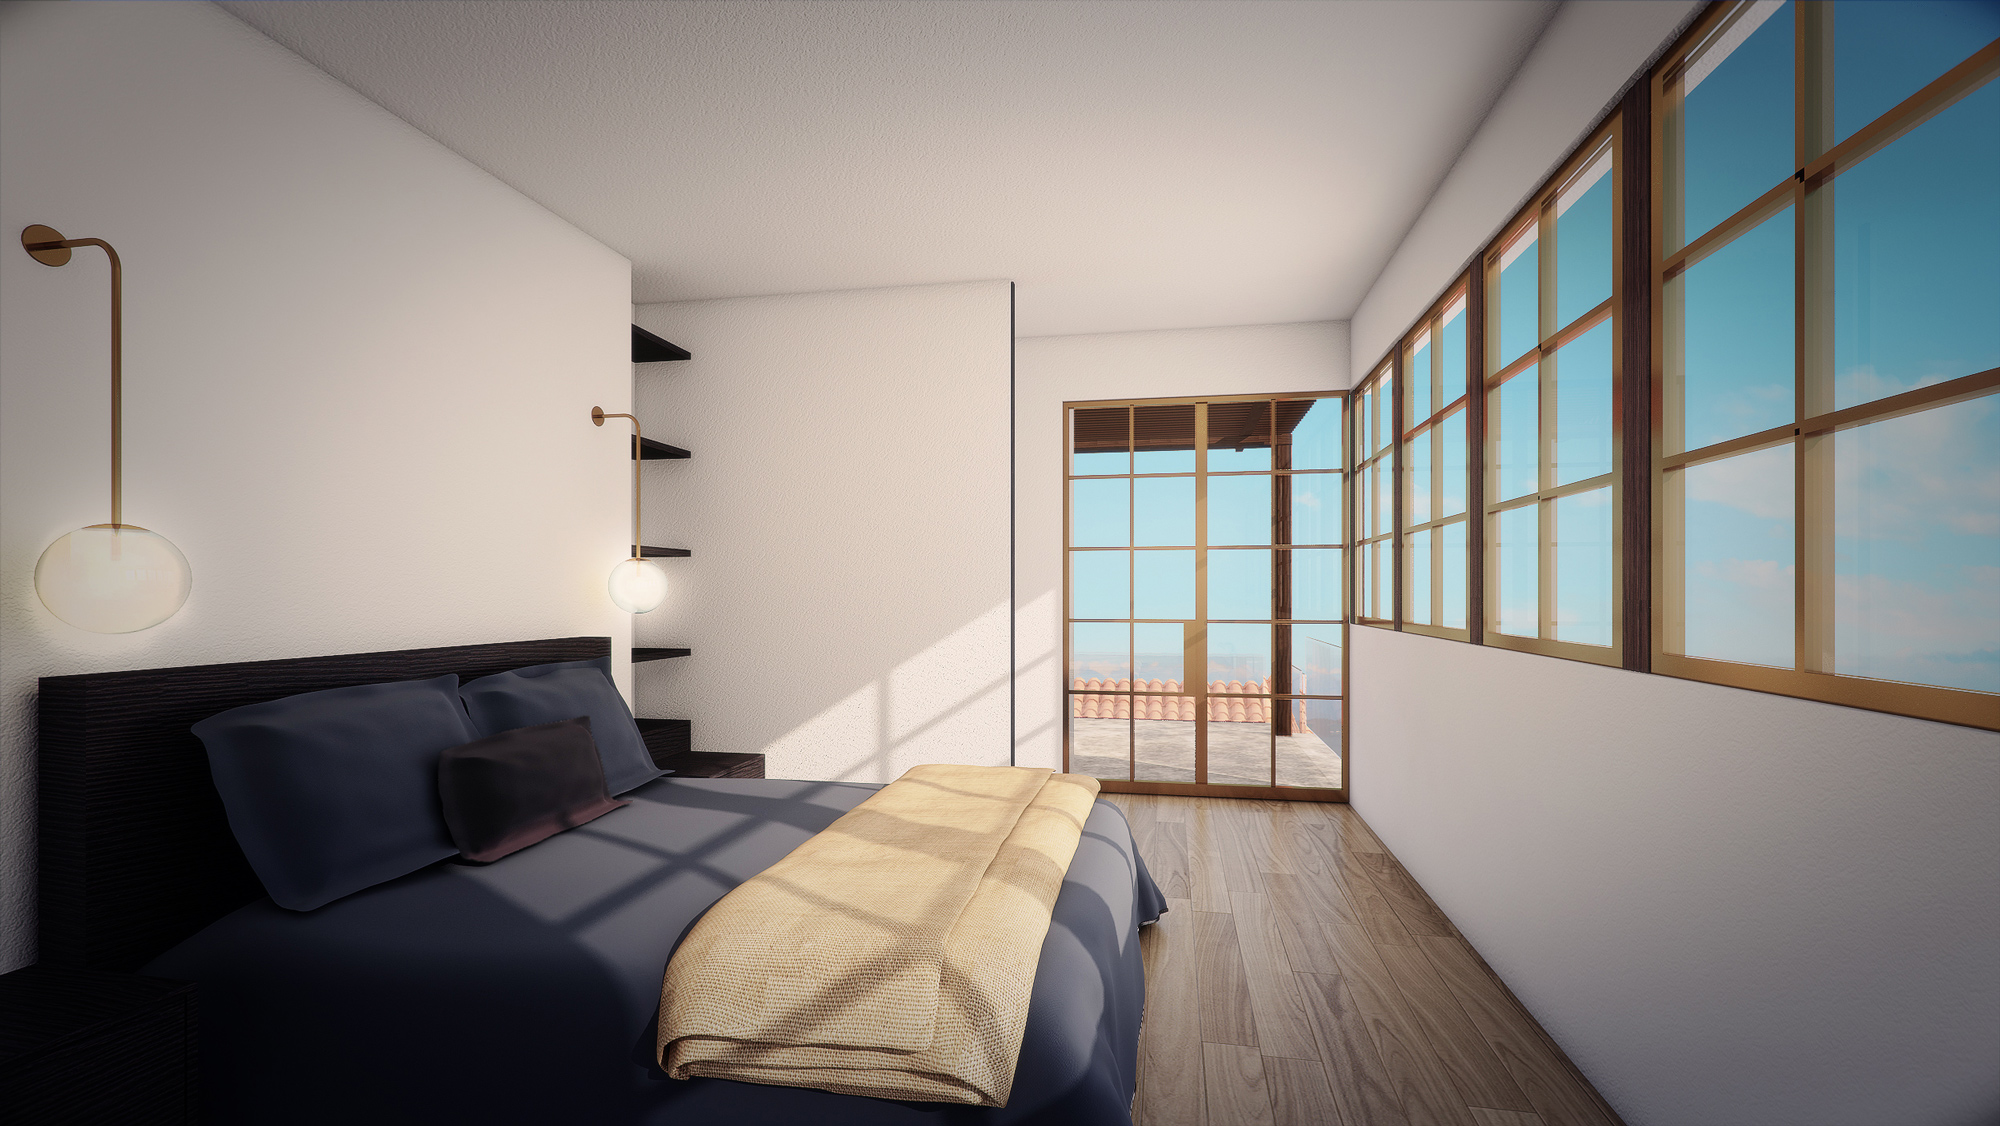 3D Bedroom Rendering